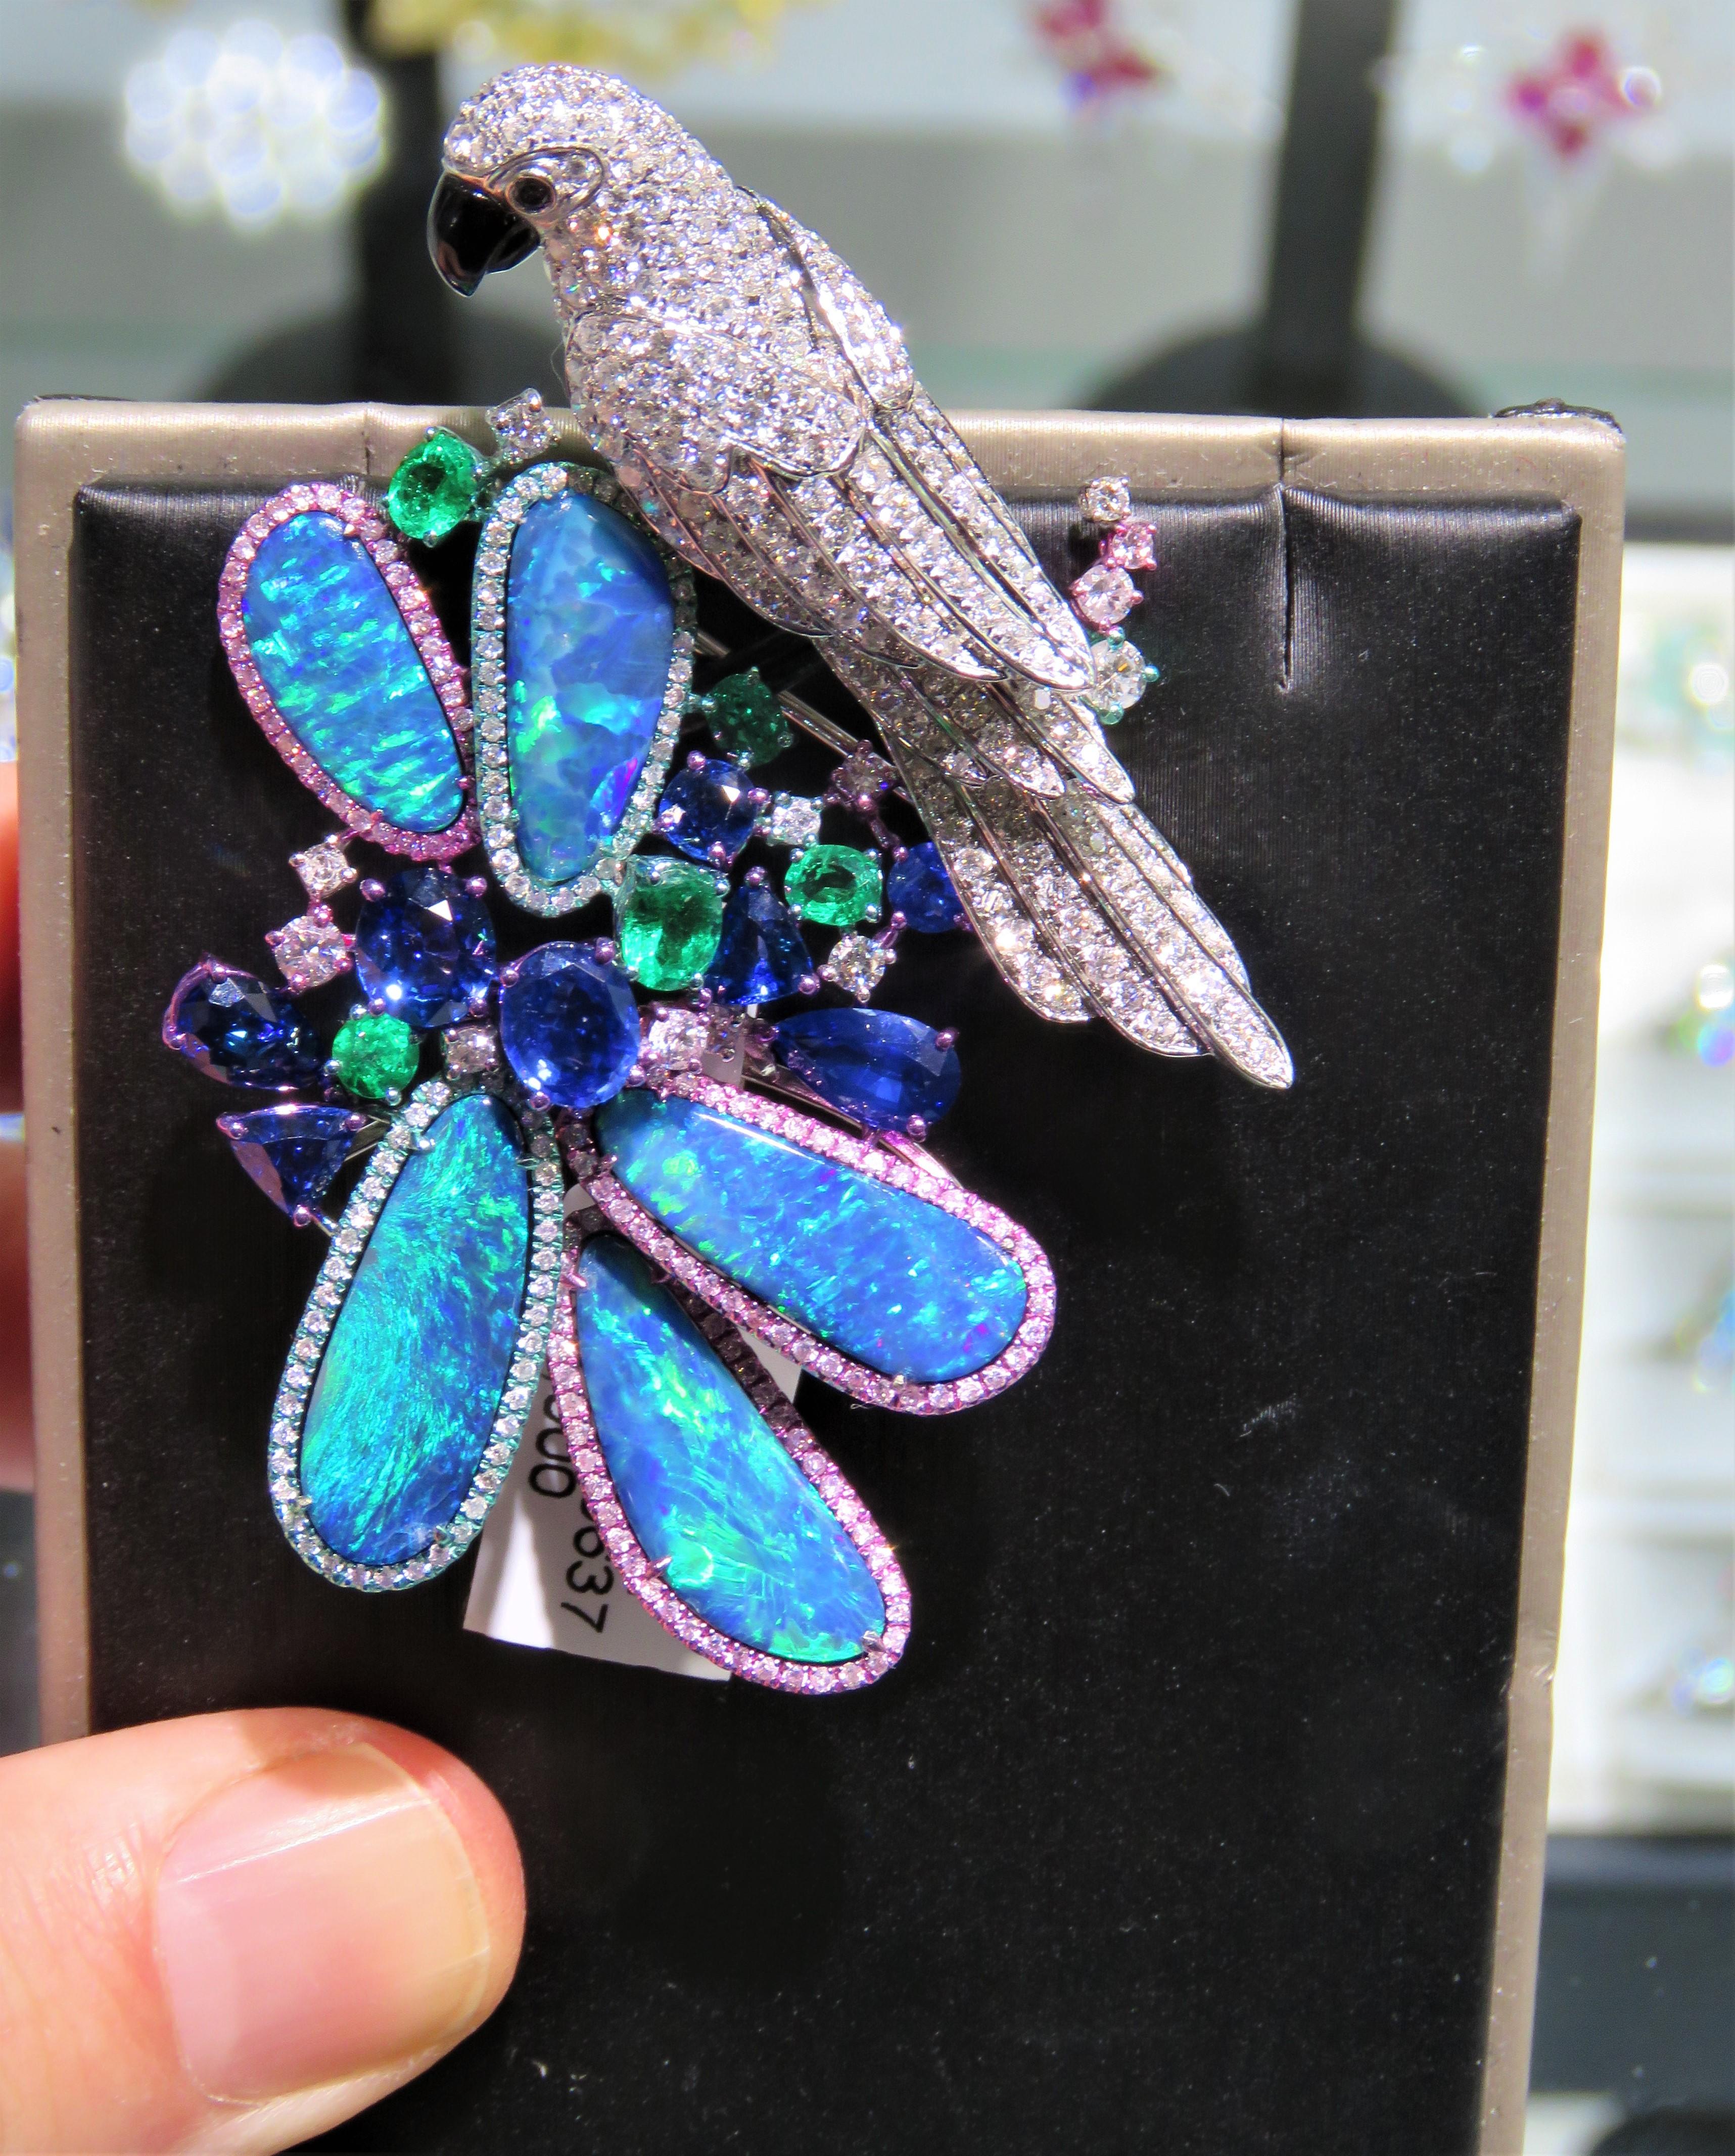 L'article suivant que nous proposons est une broche perroquet en or 18KT scintillant avec opale noire australienne et diamants. La broche est ornée d'une magnifique opale noire changeant de couleur, originaire d'Australie, et d'un bracelet en métal.